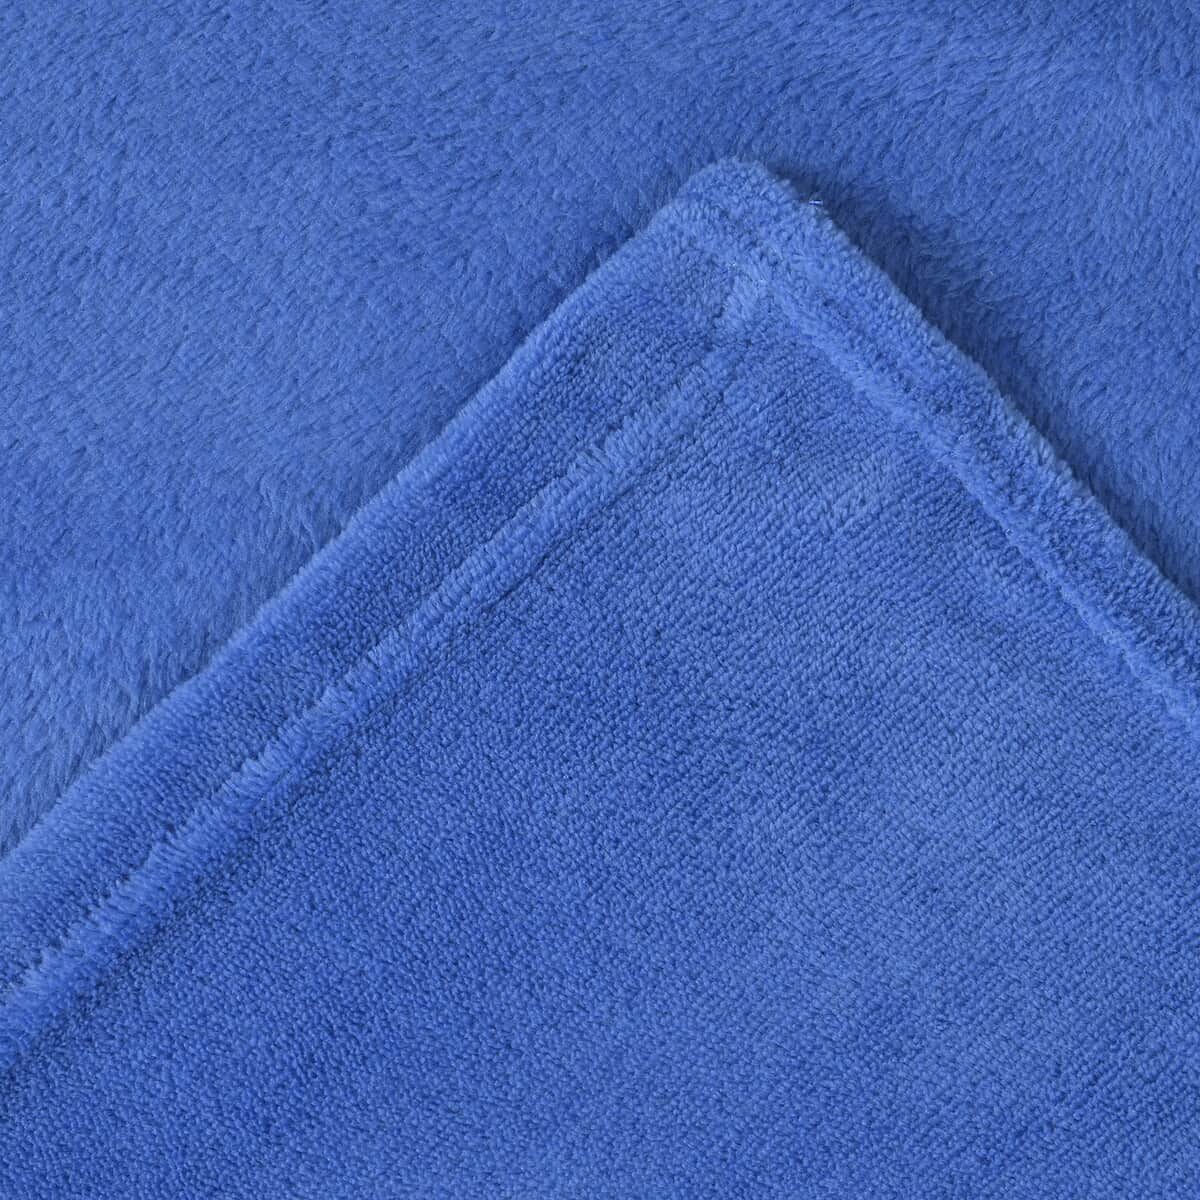 Homesmart Blue Solid Super Soft and Warm Coral Fleece Blanket image number 1